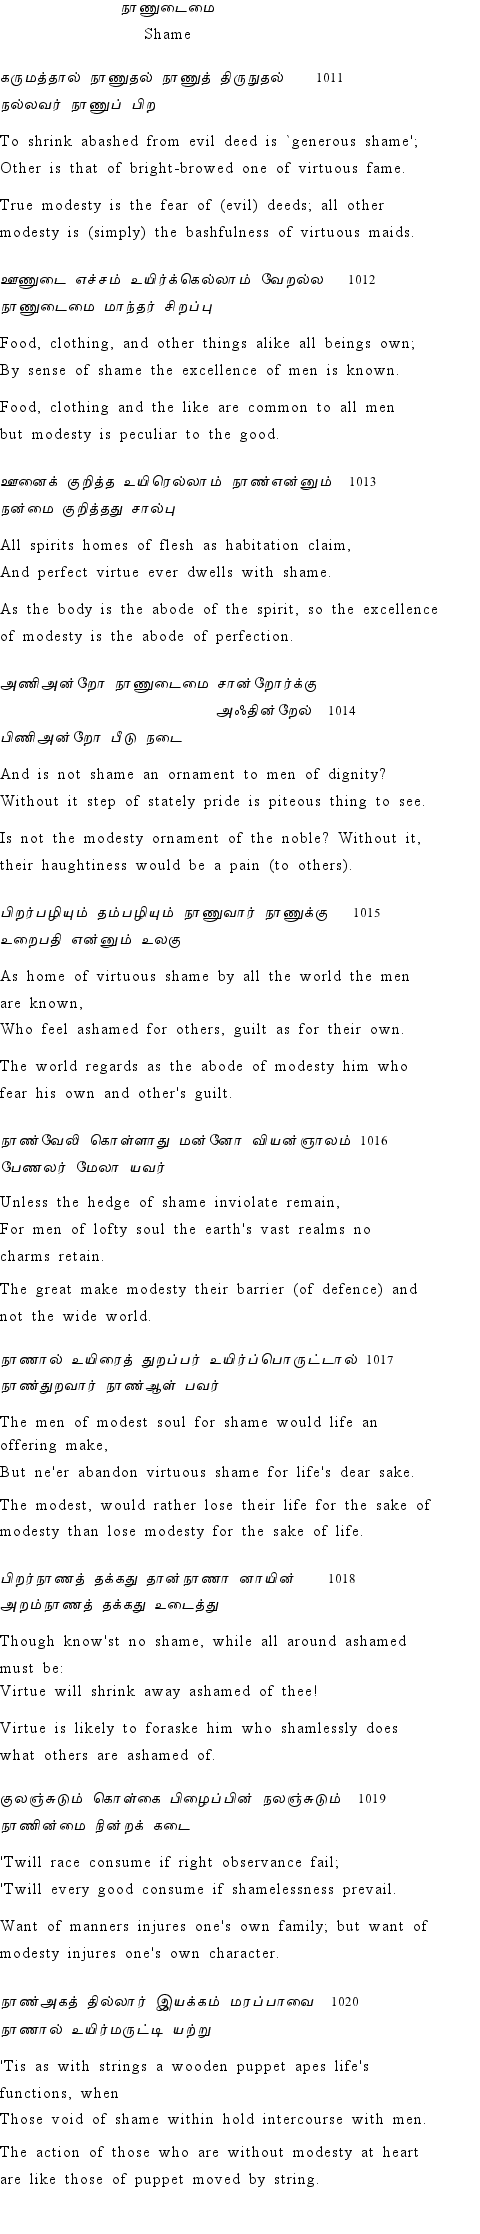 Text of Adhikaram 102